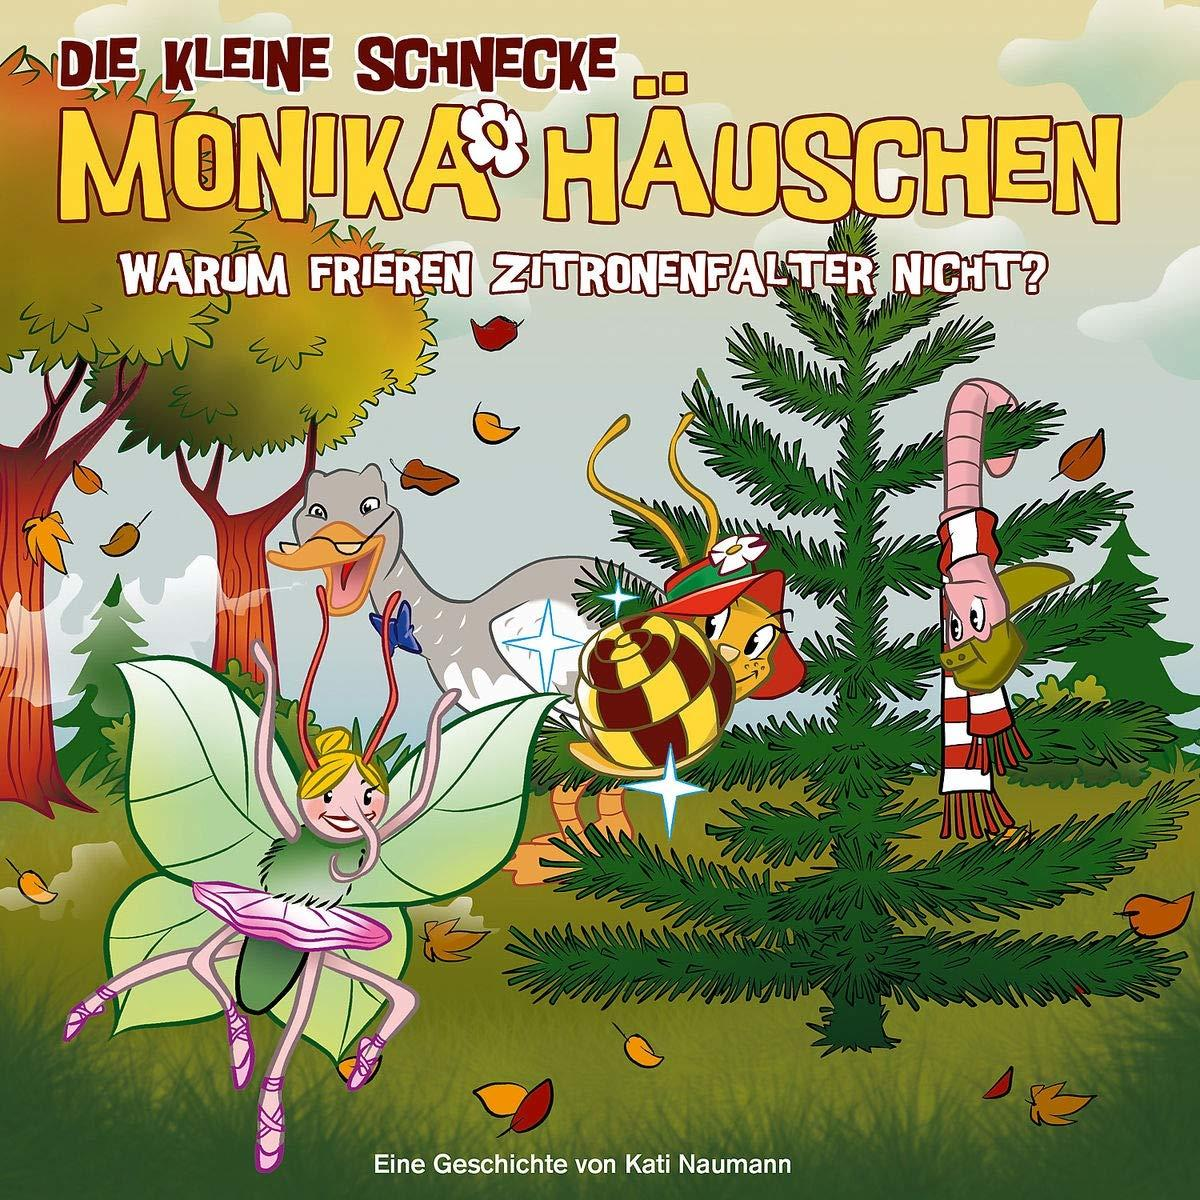 Die Kleine Frieren Schnecke Monika 54: Zitronenfalter Warum Häuschen Nicht? - - (CD)